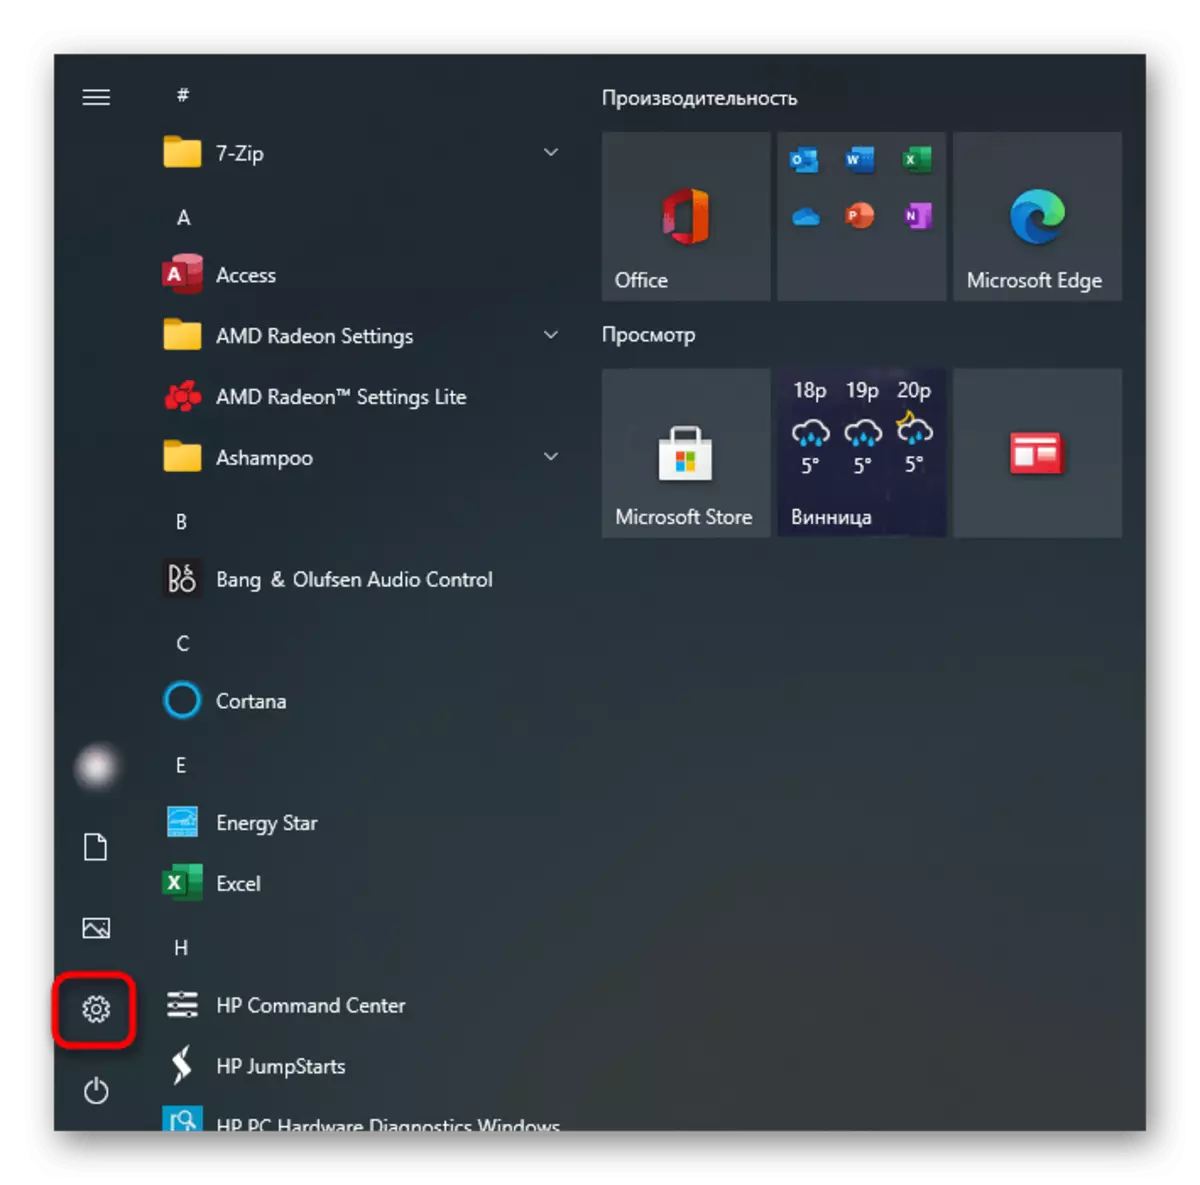 Aneu als paràmetres per encendre el touchpad a l'ordinador portàtil de Lenovo amb Windows 10